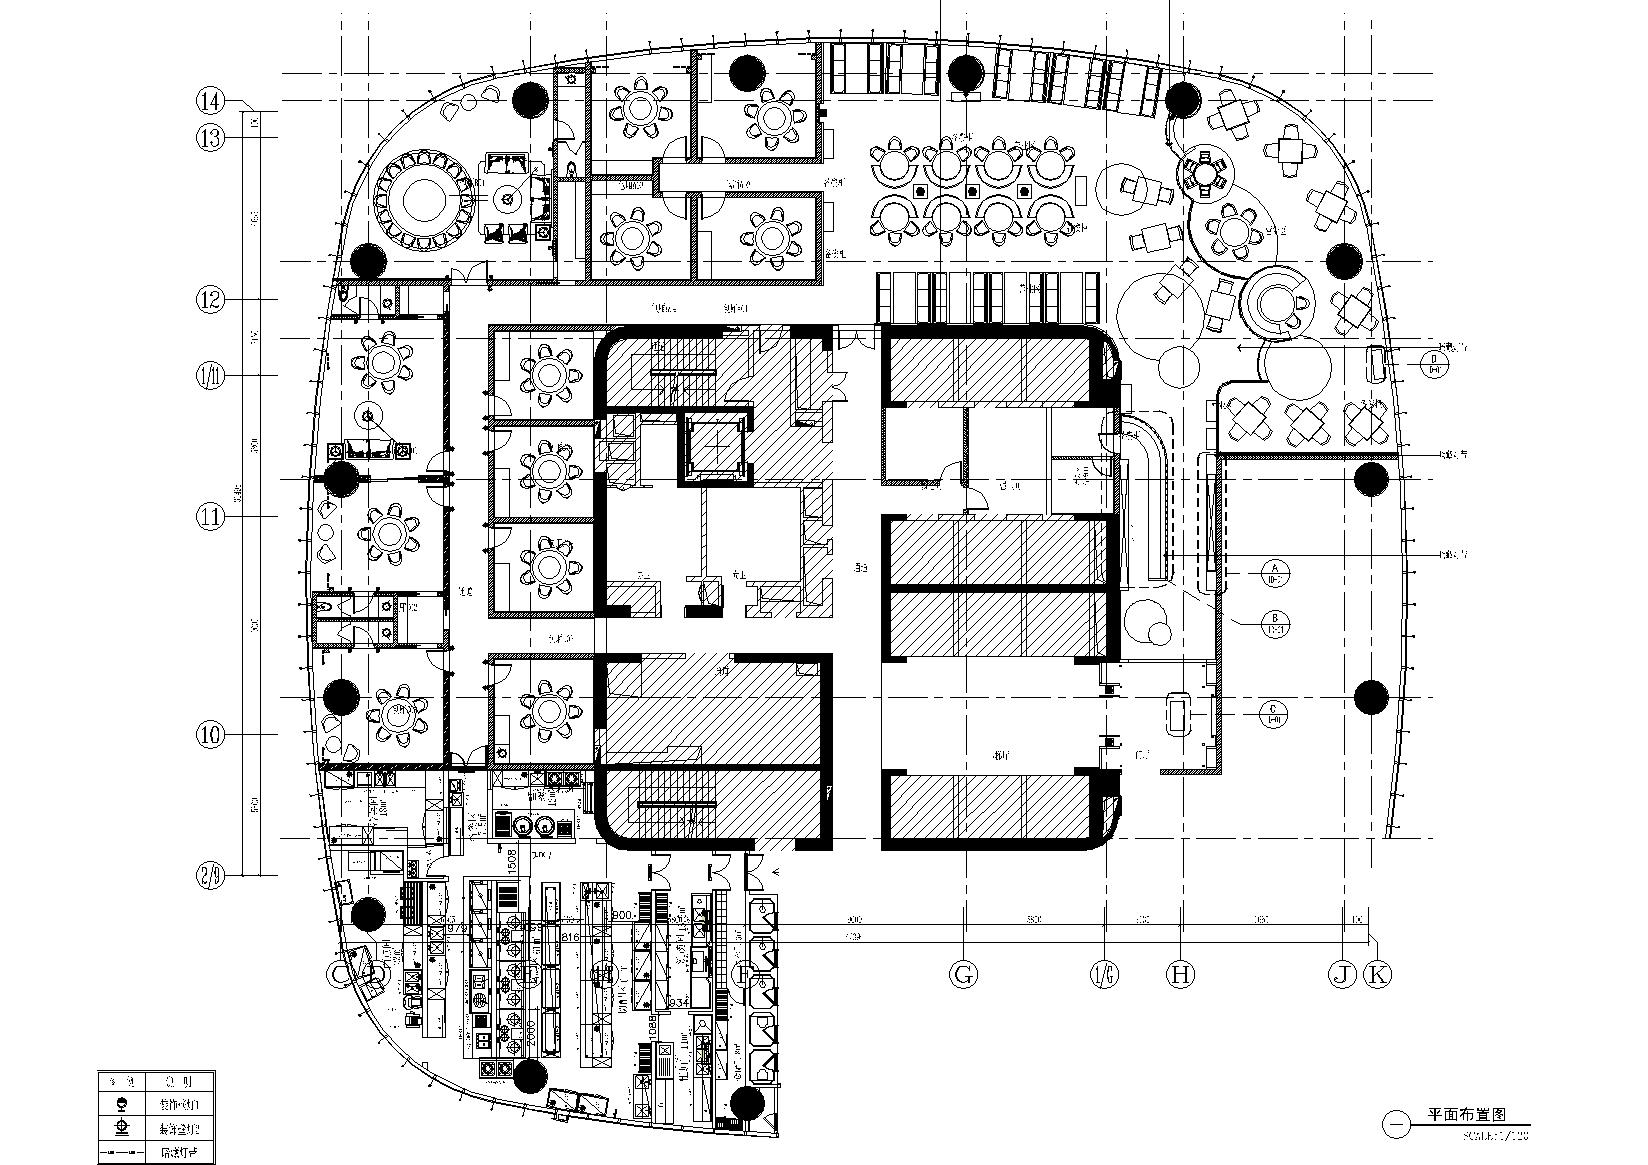 2020年5月大型餐饮空间设计施工图